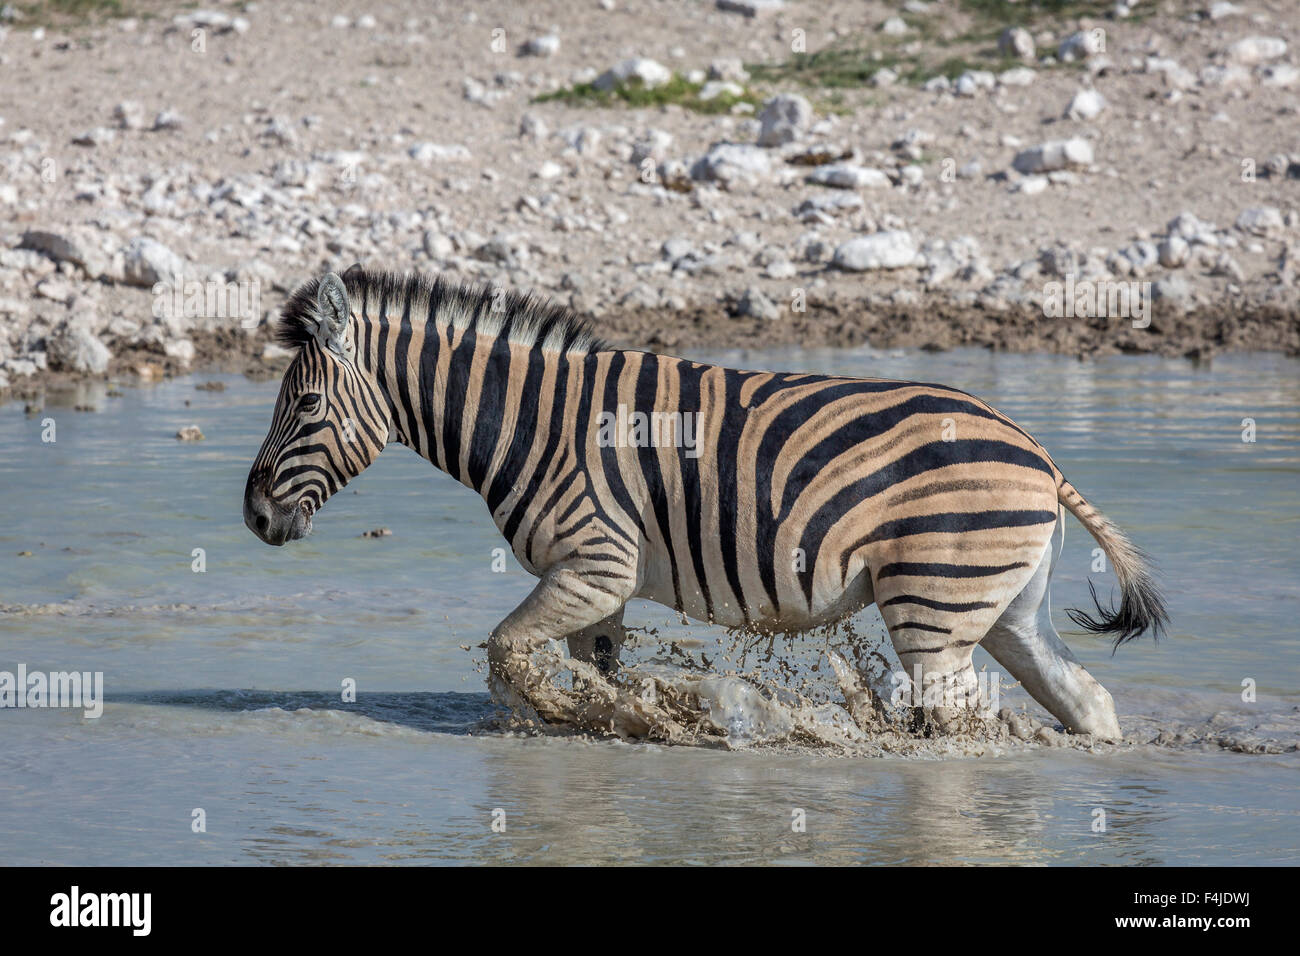 Zebra in a water hole, Etosha National Park, Namibia, Africa Stock Photo